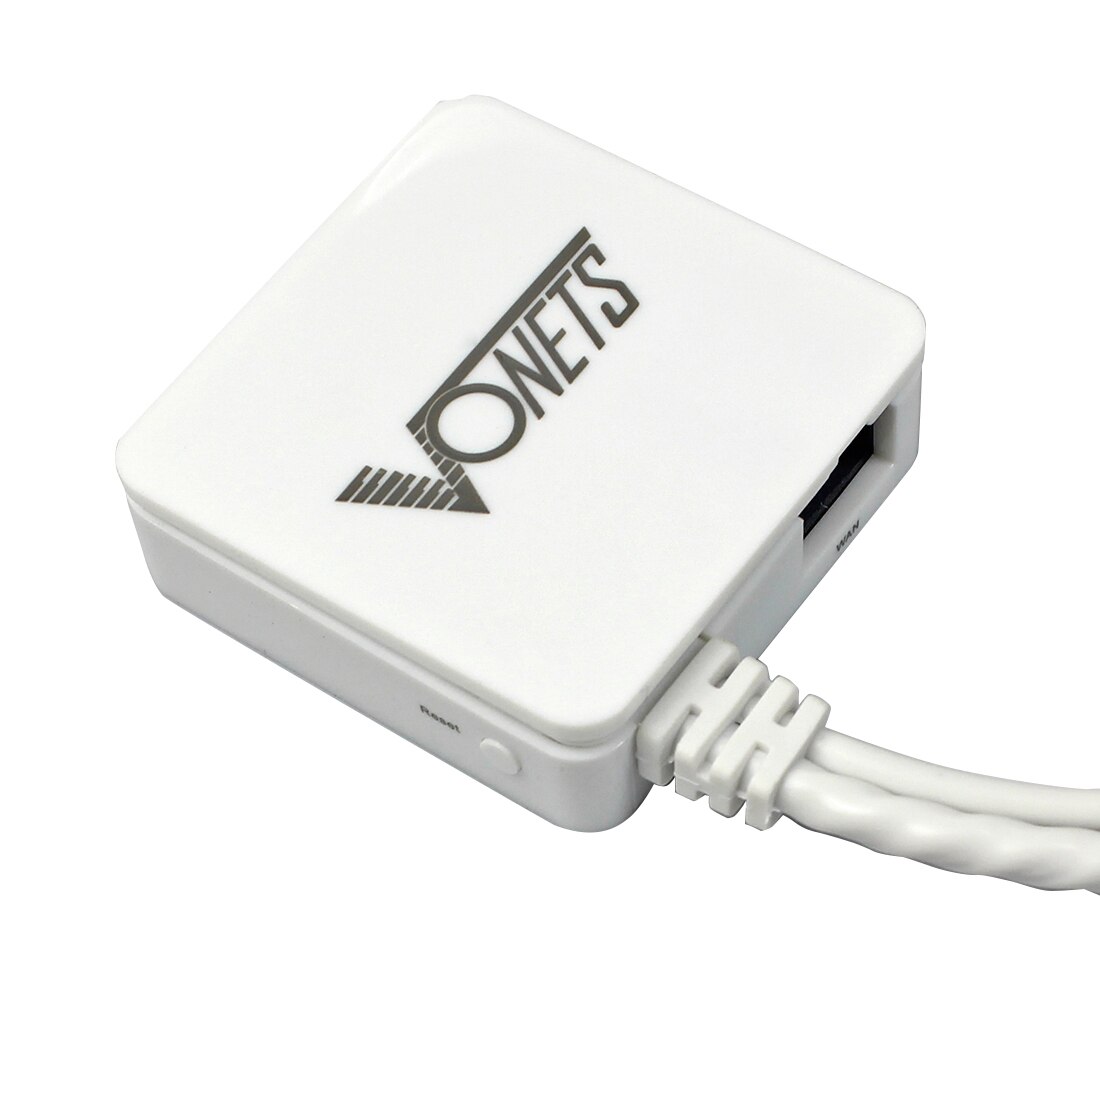 Vonets VAR11N-300 mini WiFi bezprzewodowy router sieciowy i mostek router wi-fi ze wzmacniaczem sygnału 300 mb/s sygnał Wifi stabilny